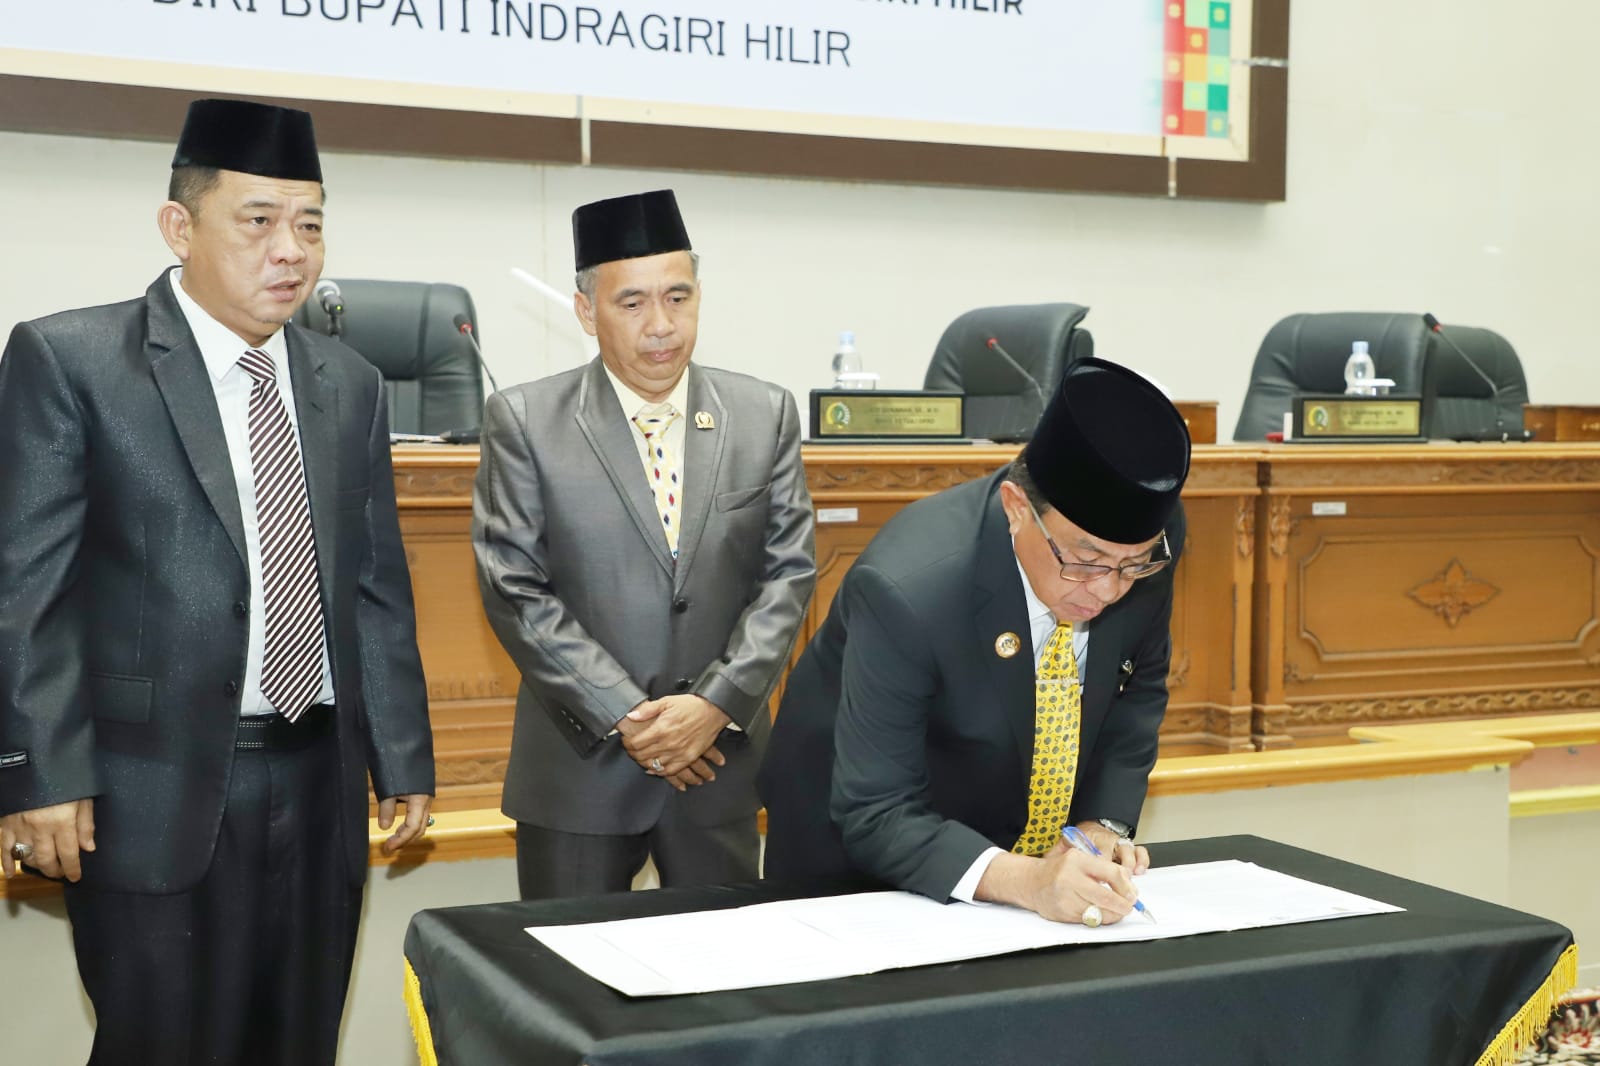 Bupati Indragiri Hilir, HM. Wardan, Ajukan Pengunduran Diri Menuju Pemilihan DPR-RI 2024.